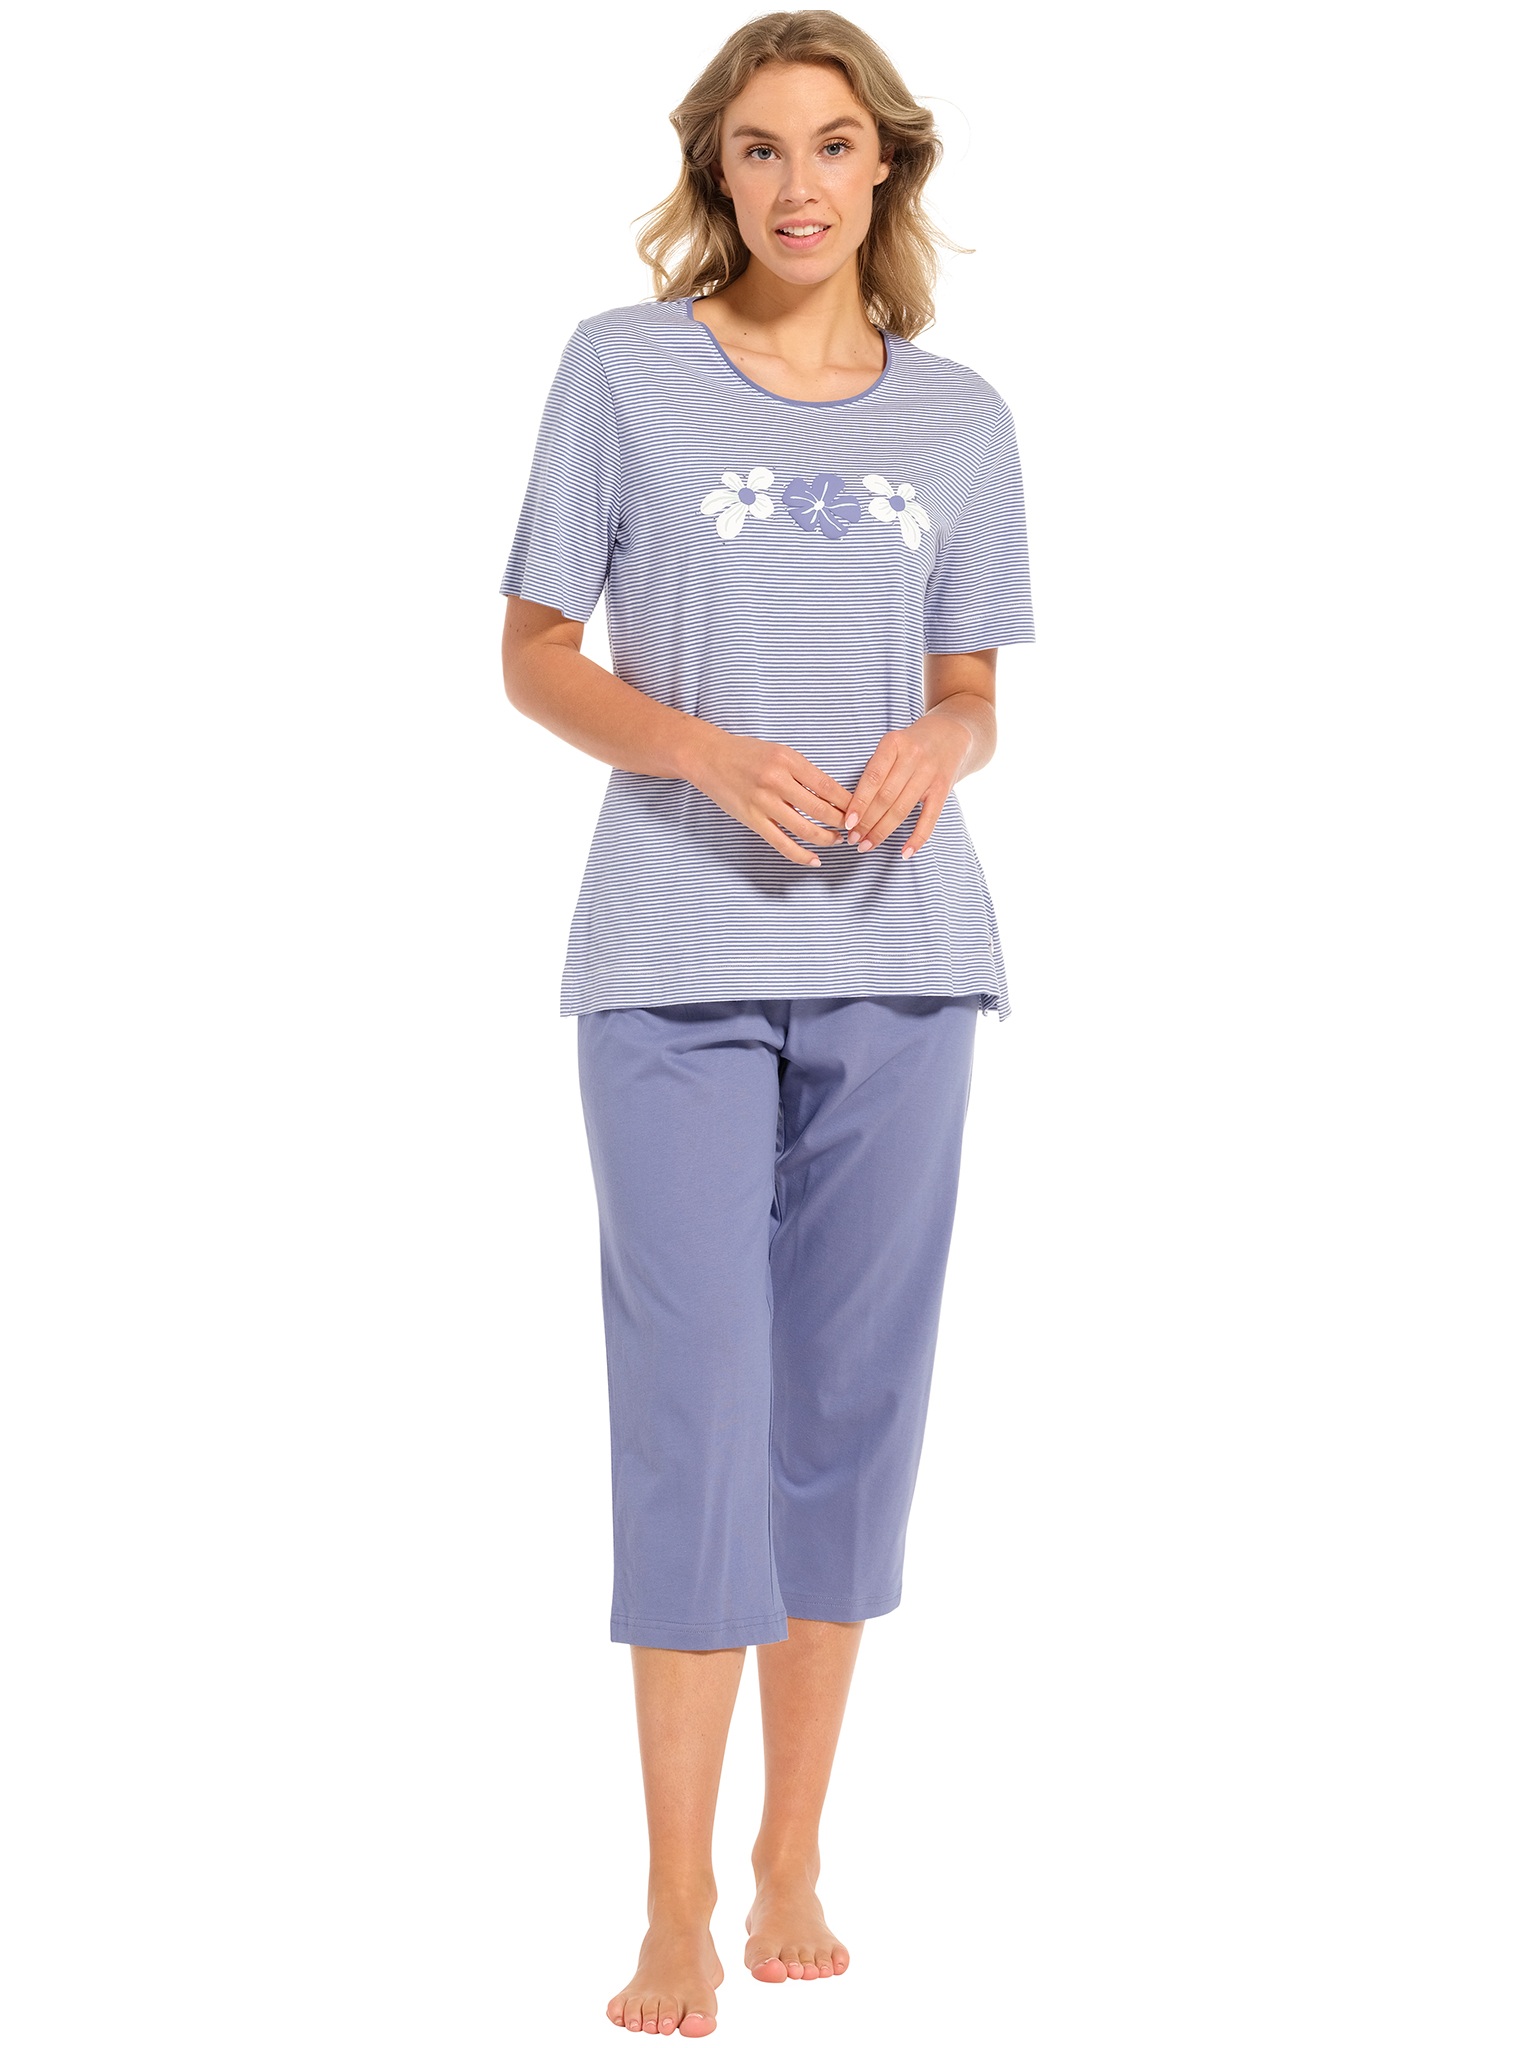 Pastunette - Blossoms - Dames Pyjamaset - Blauw - Organisch Katoen - Maat 40